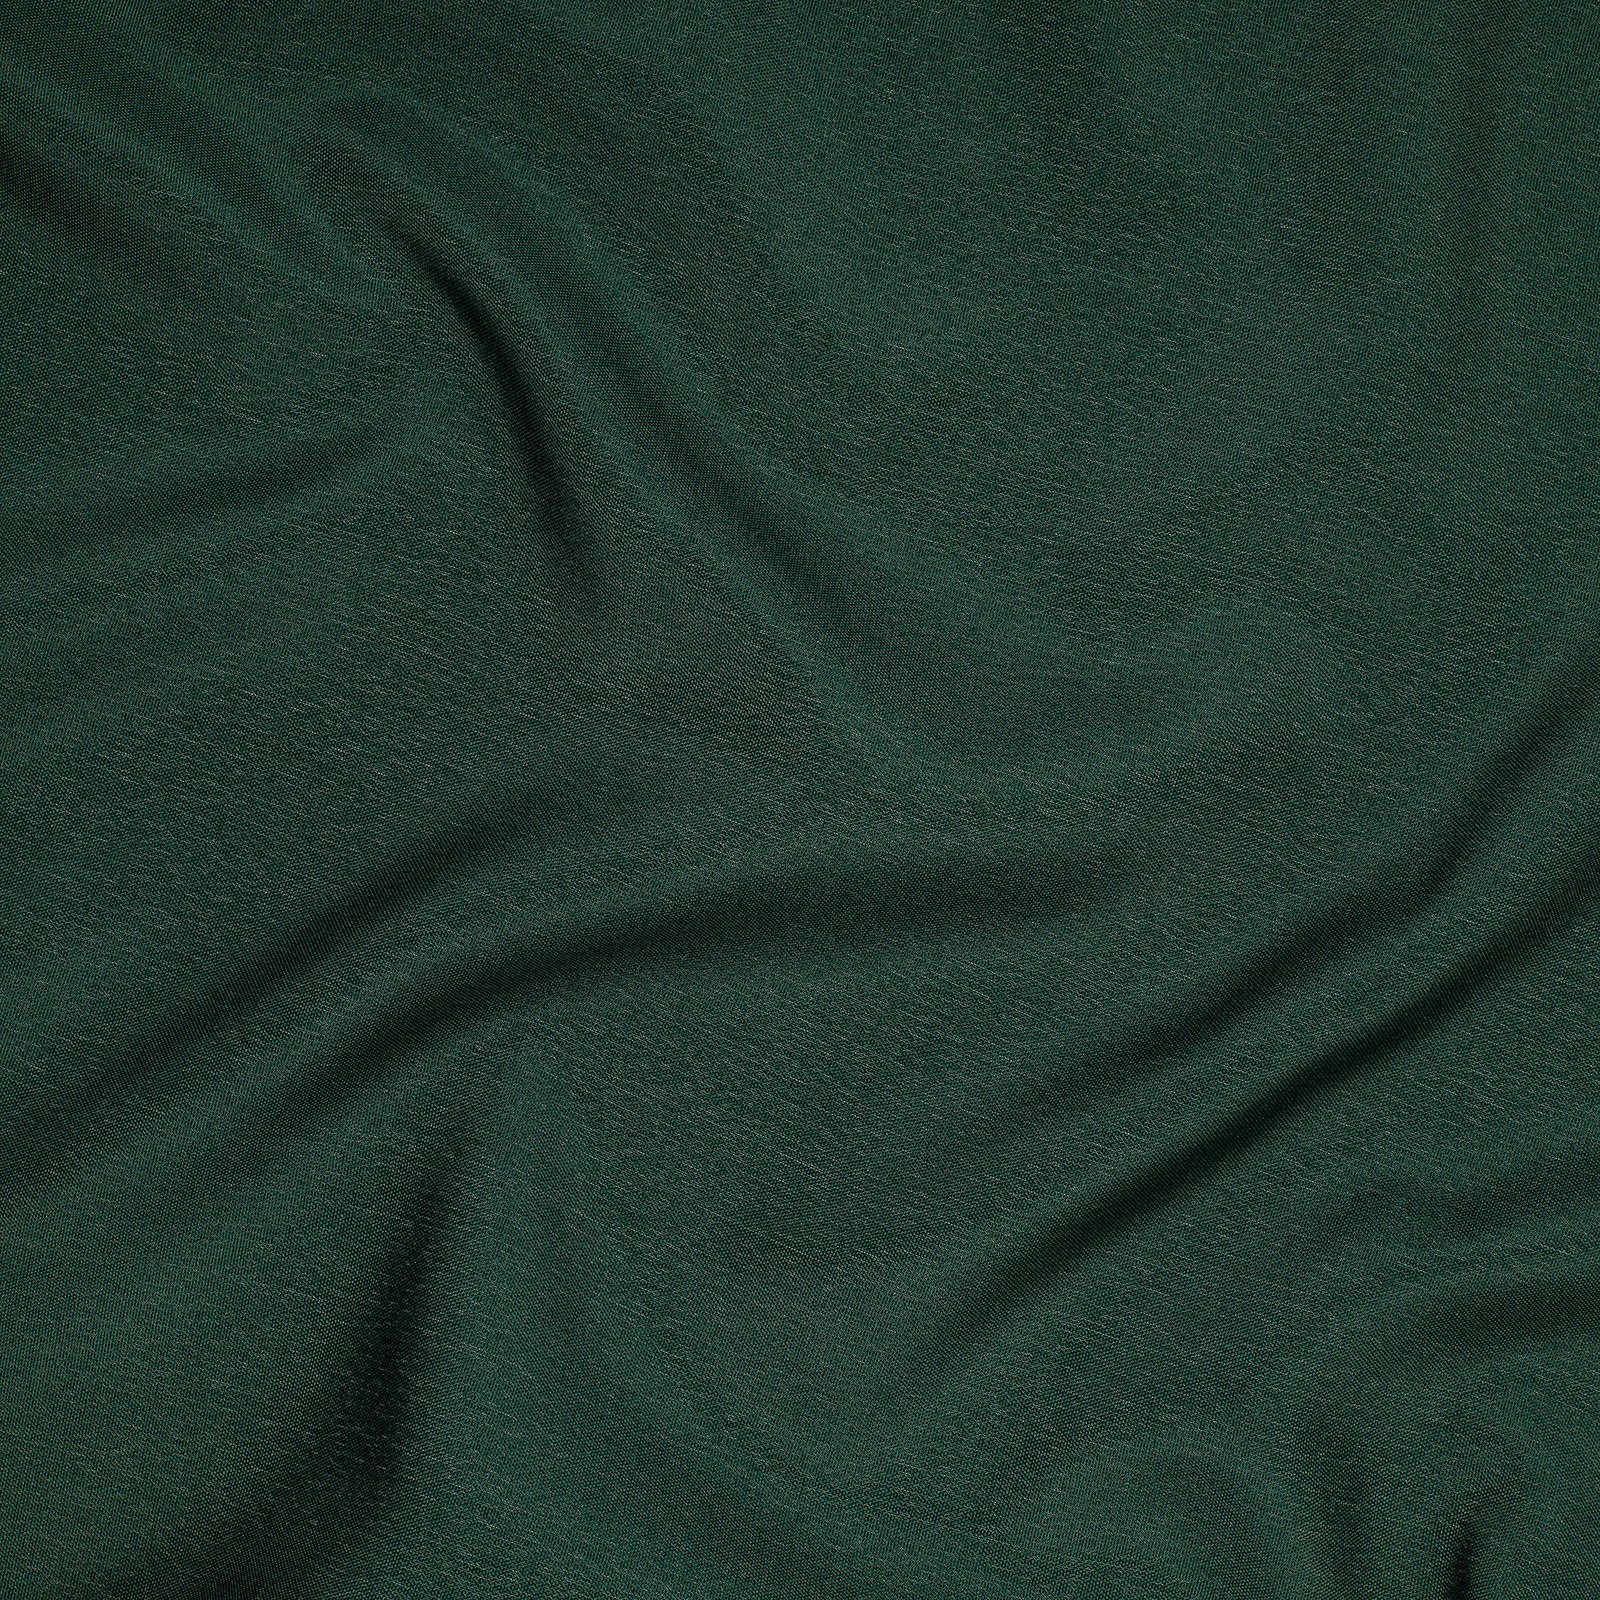 Vorhang Blickdichte in Ösen Tischdecke JEMIDI Beige, 140x250cm mit Grün